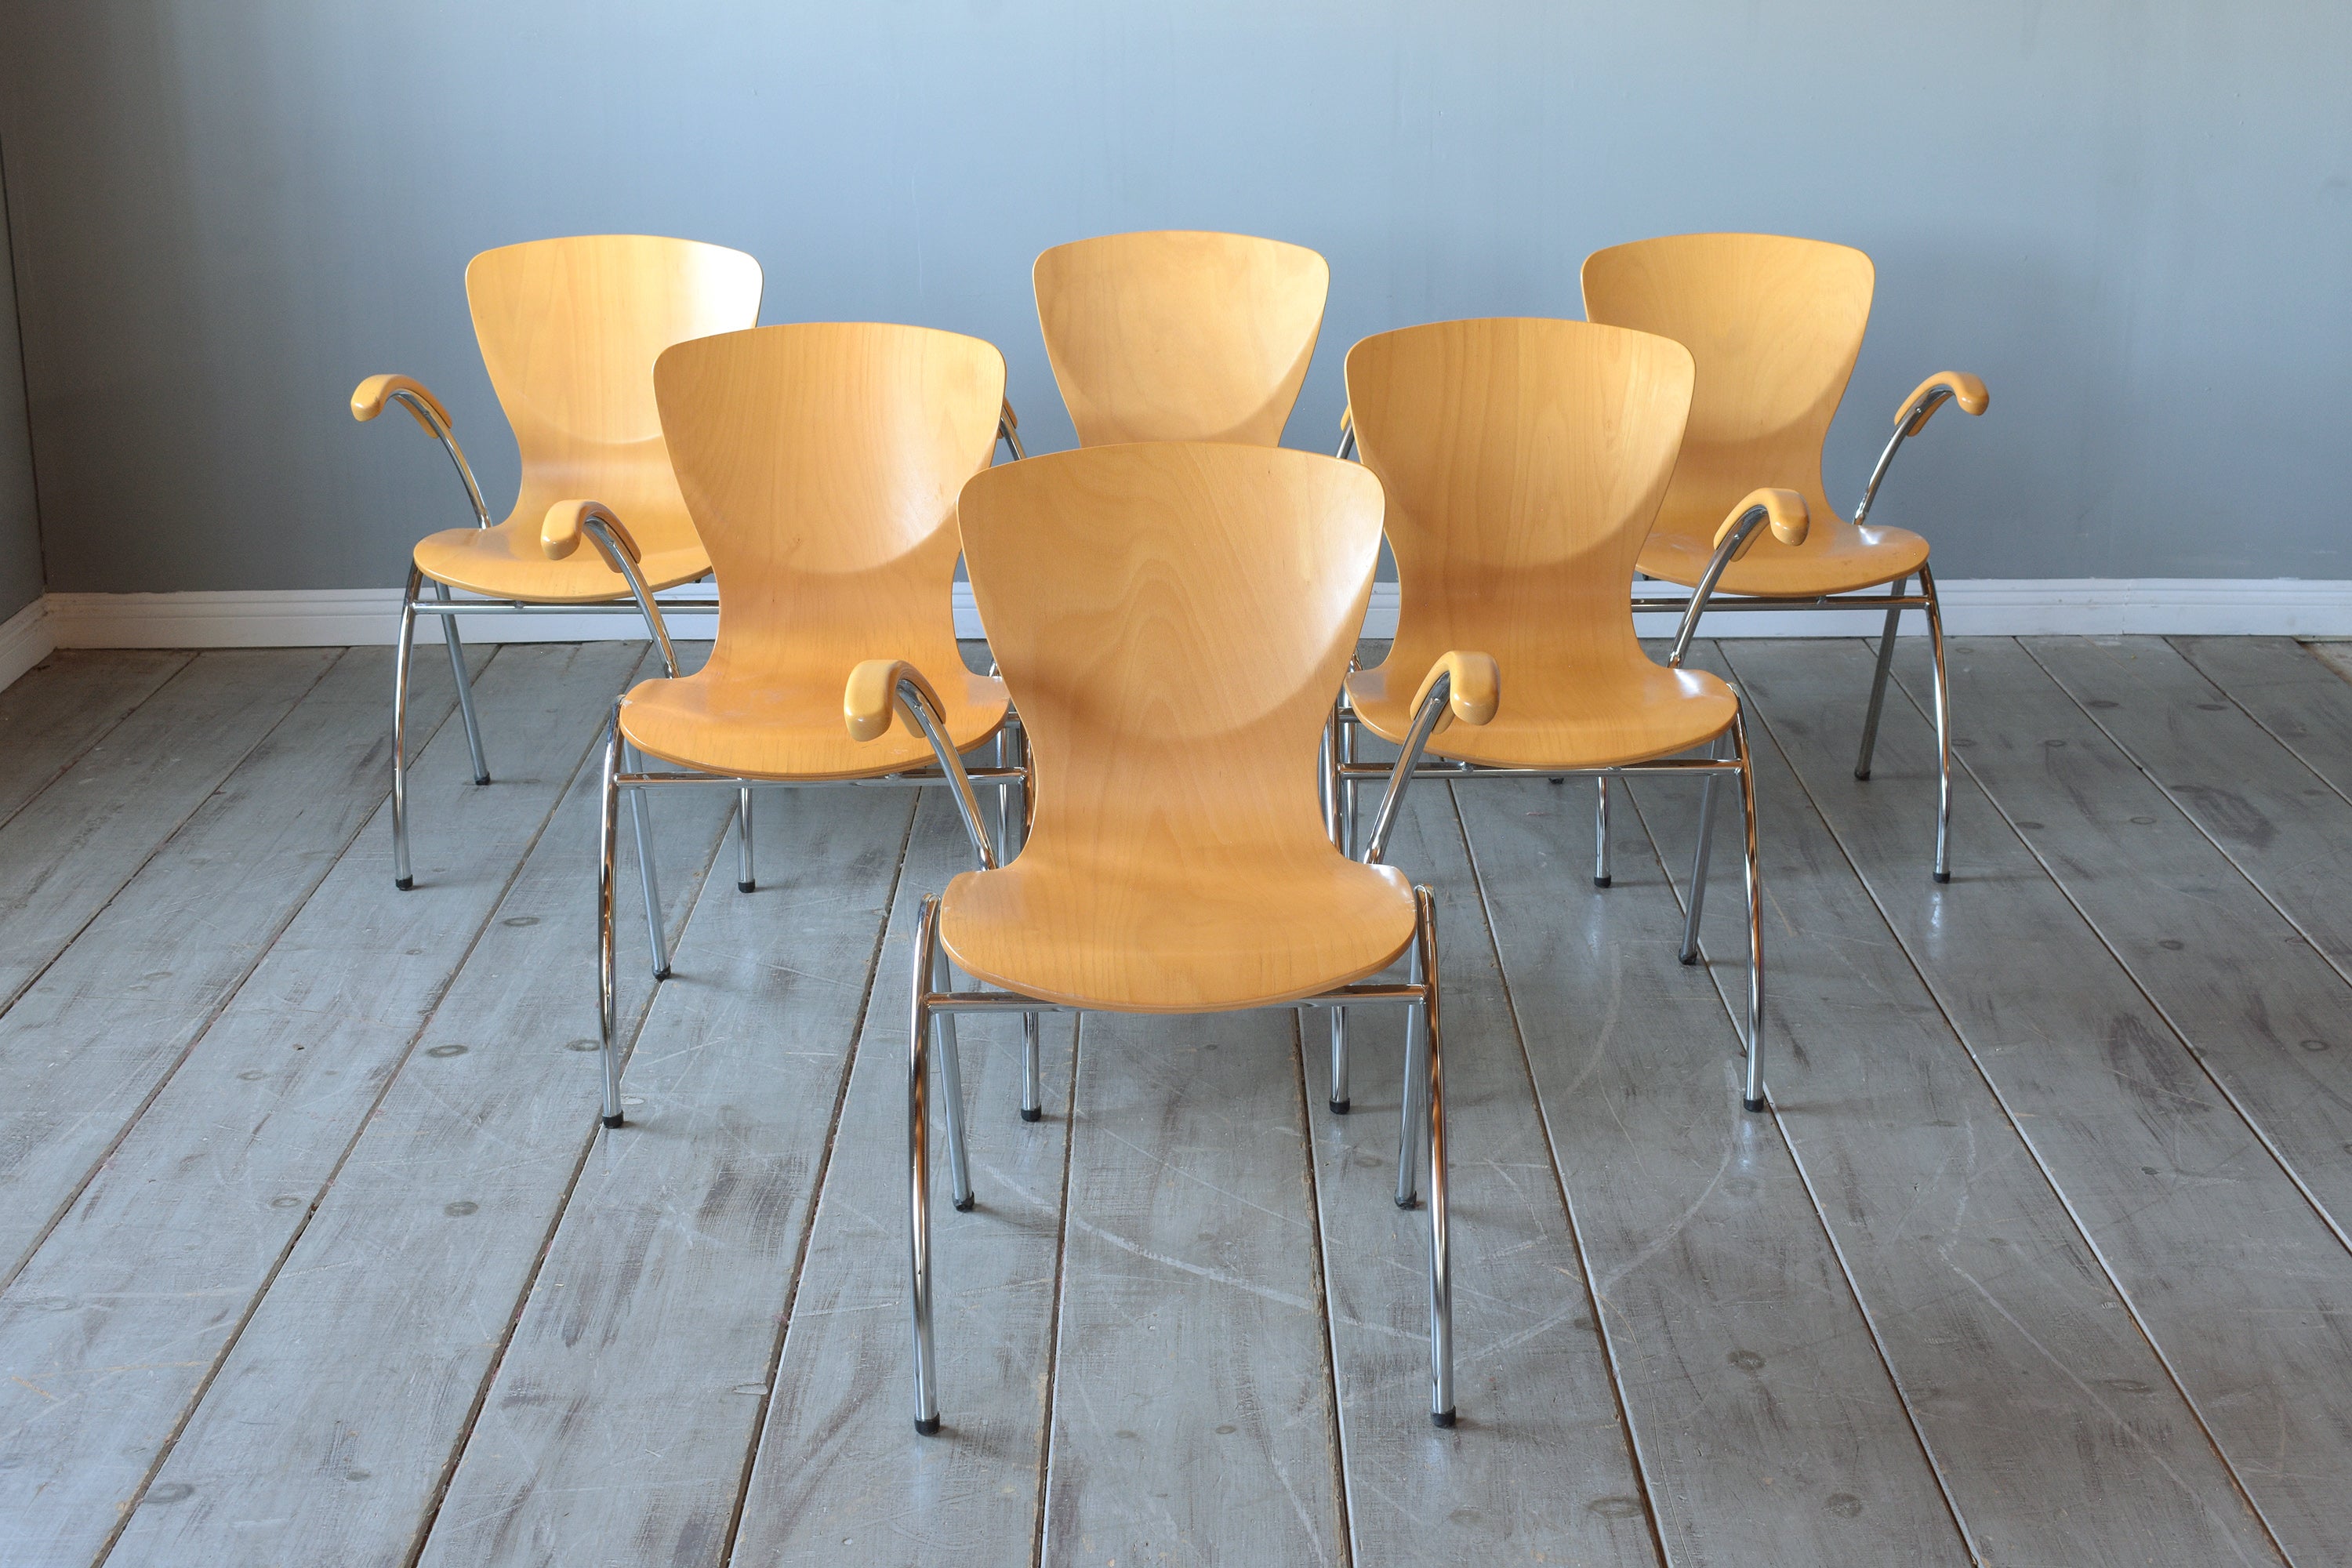 Élevez votre expérience culinaire avec notre exceptionnel ensemble de six chaises de salle à manger modernes du 21e siècle, un mélange parfait de design contemporain et de style classique du milieu du siècle. Ces chaises ont été fabriquées à la main